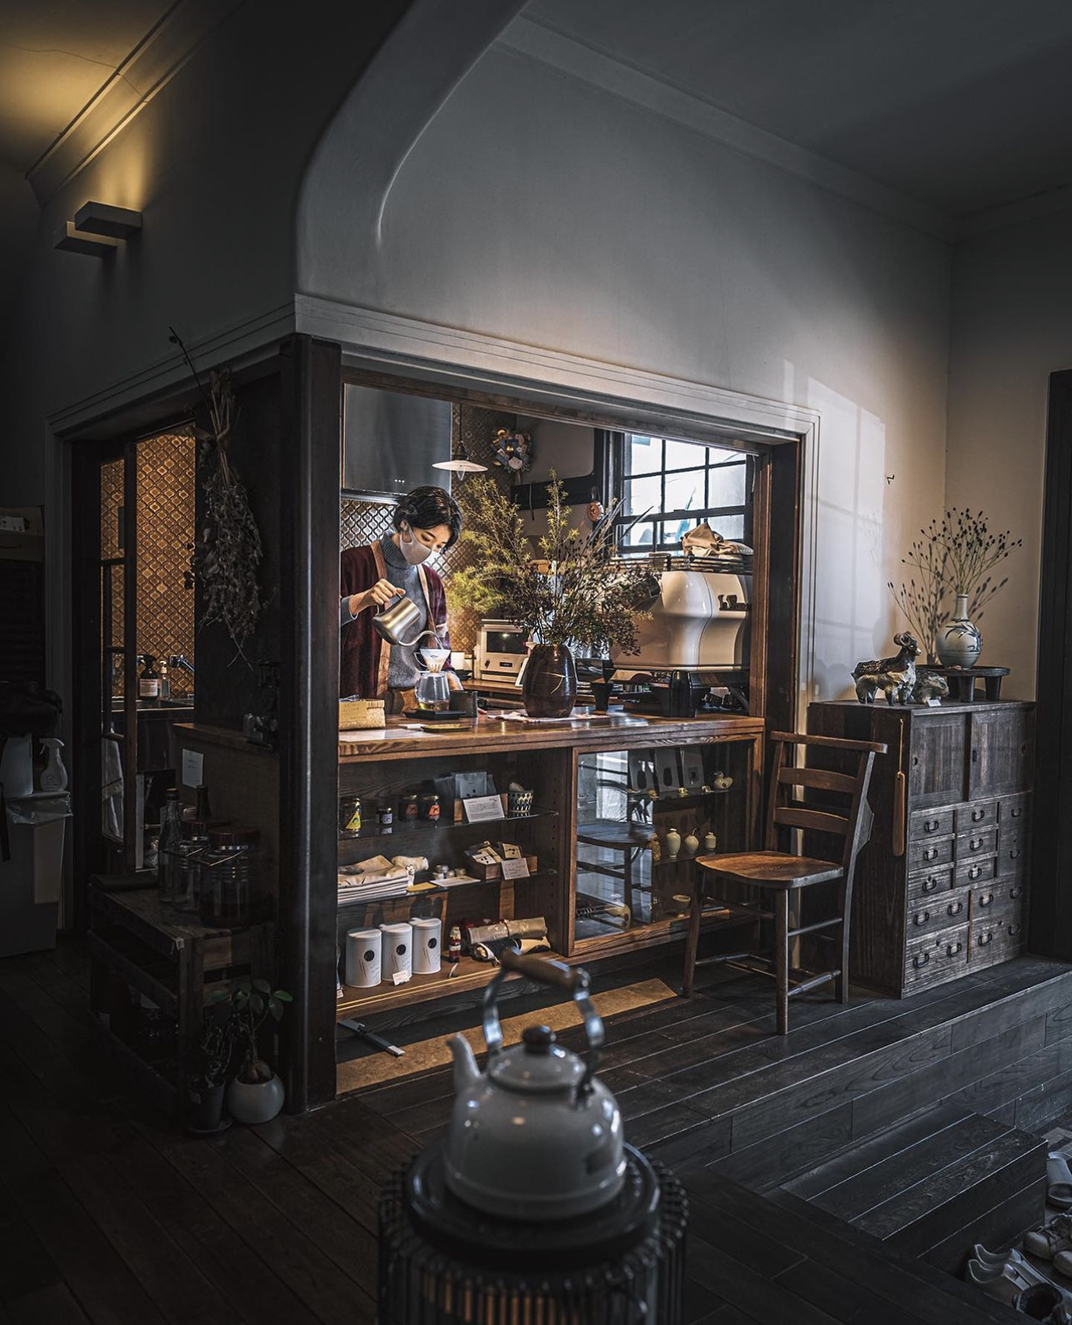 古早氛围咖啡店 北京 上海 成都 武汉 杭州 广州 日本 咖啡馆 古早 复古 木材 logo设计 vi设计 空间设计